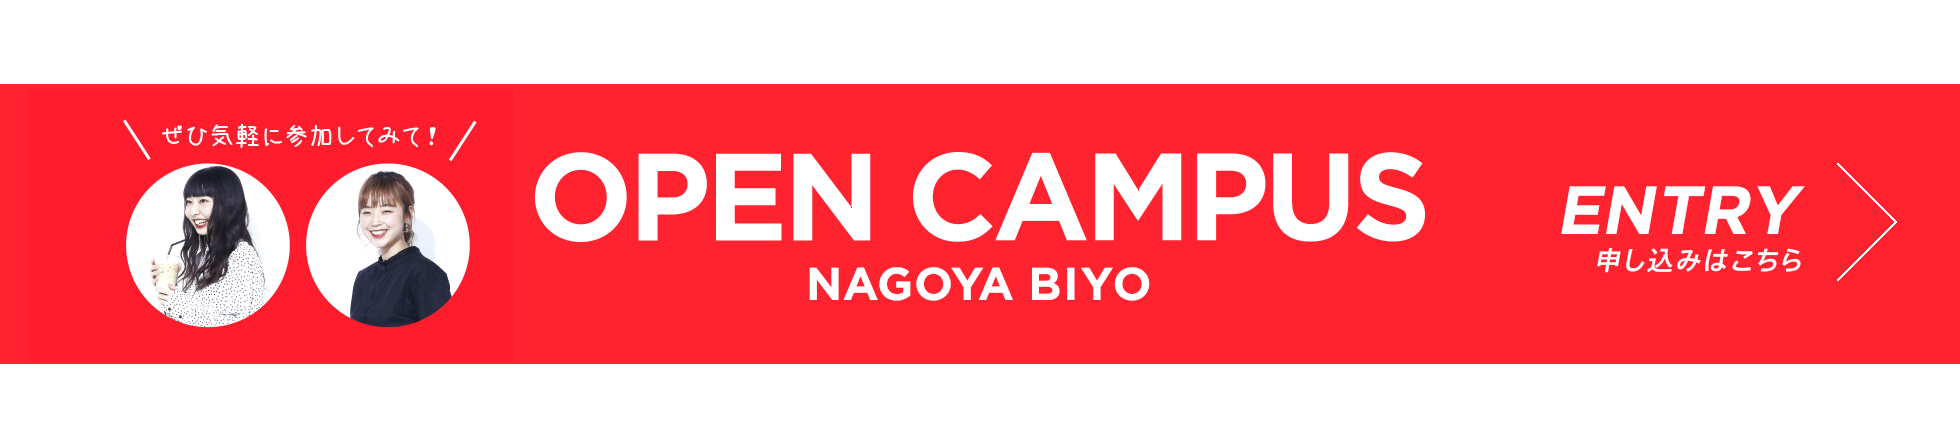 OPEN CAMPUS NAGOYA BIYO